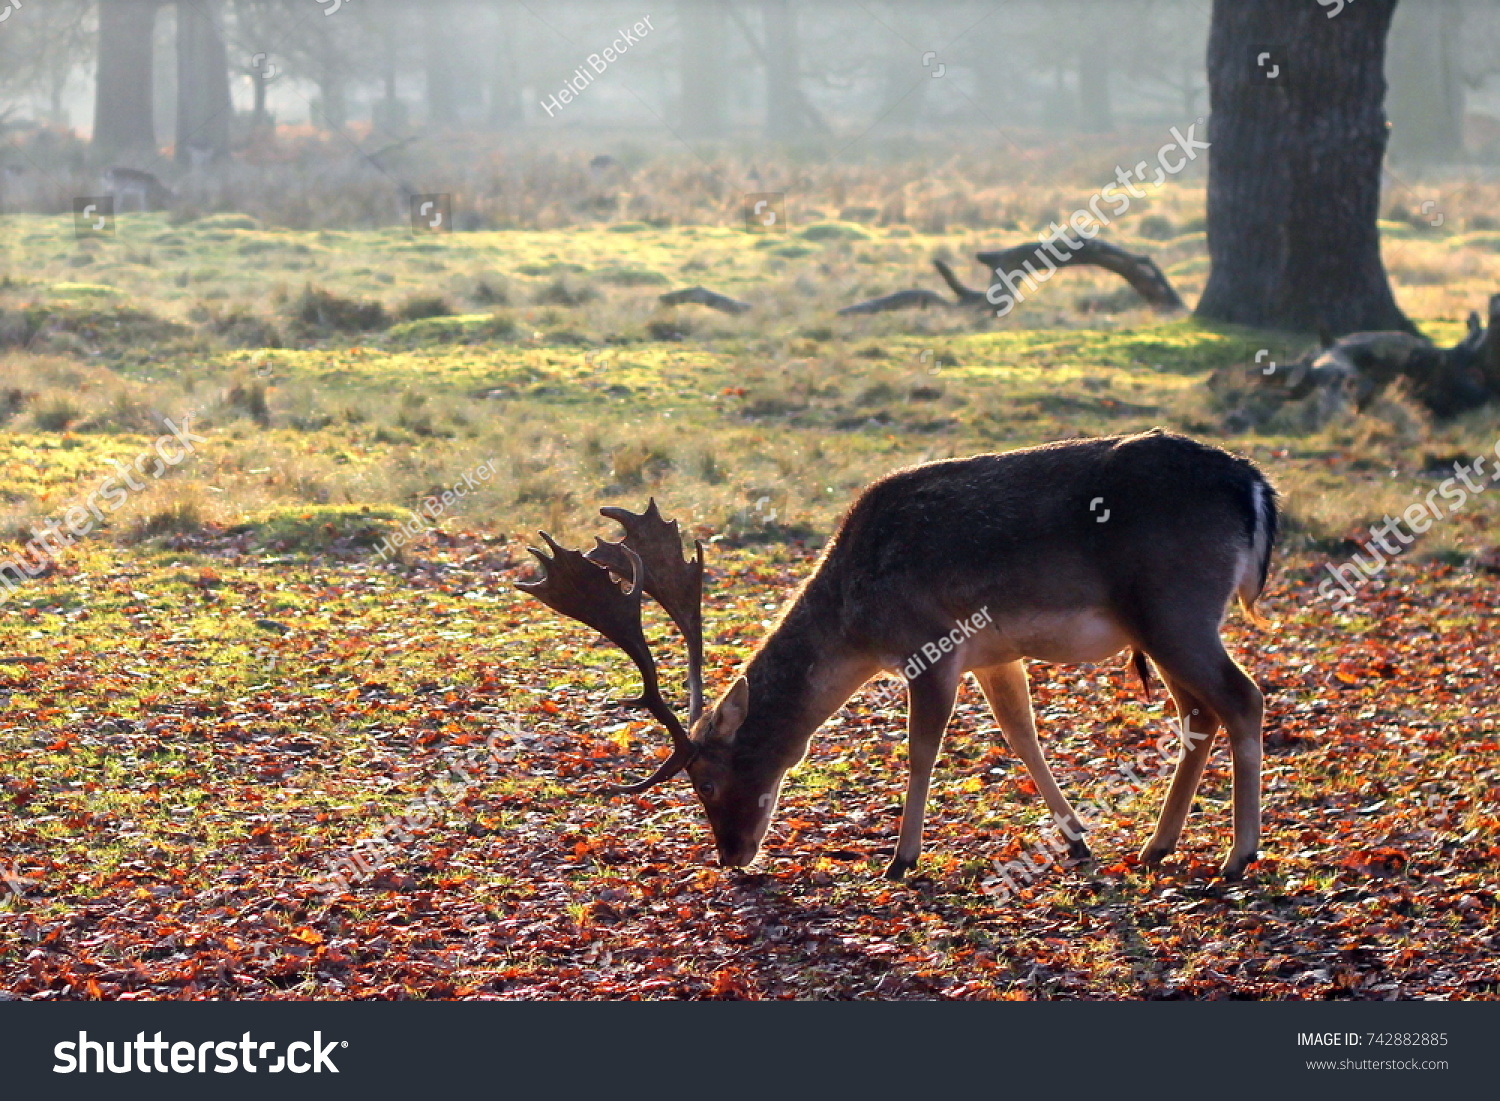 A deer feeding at Dunham Massey National Trust, England - Autumn/Winter #742882885